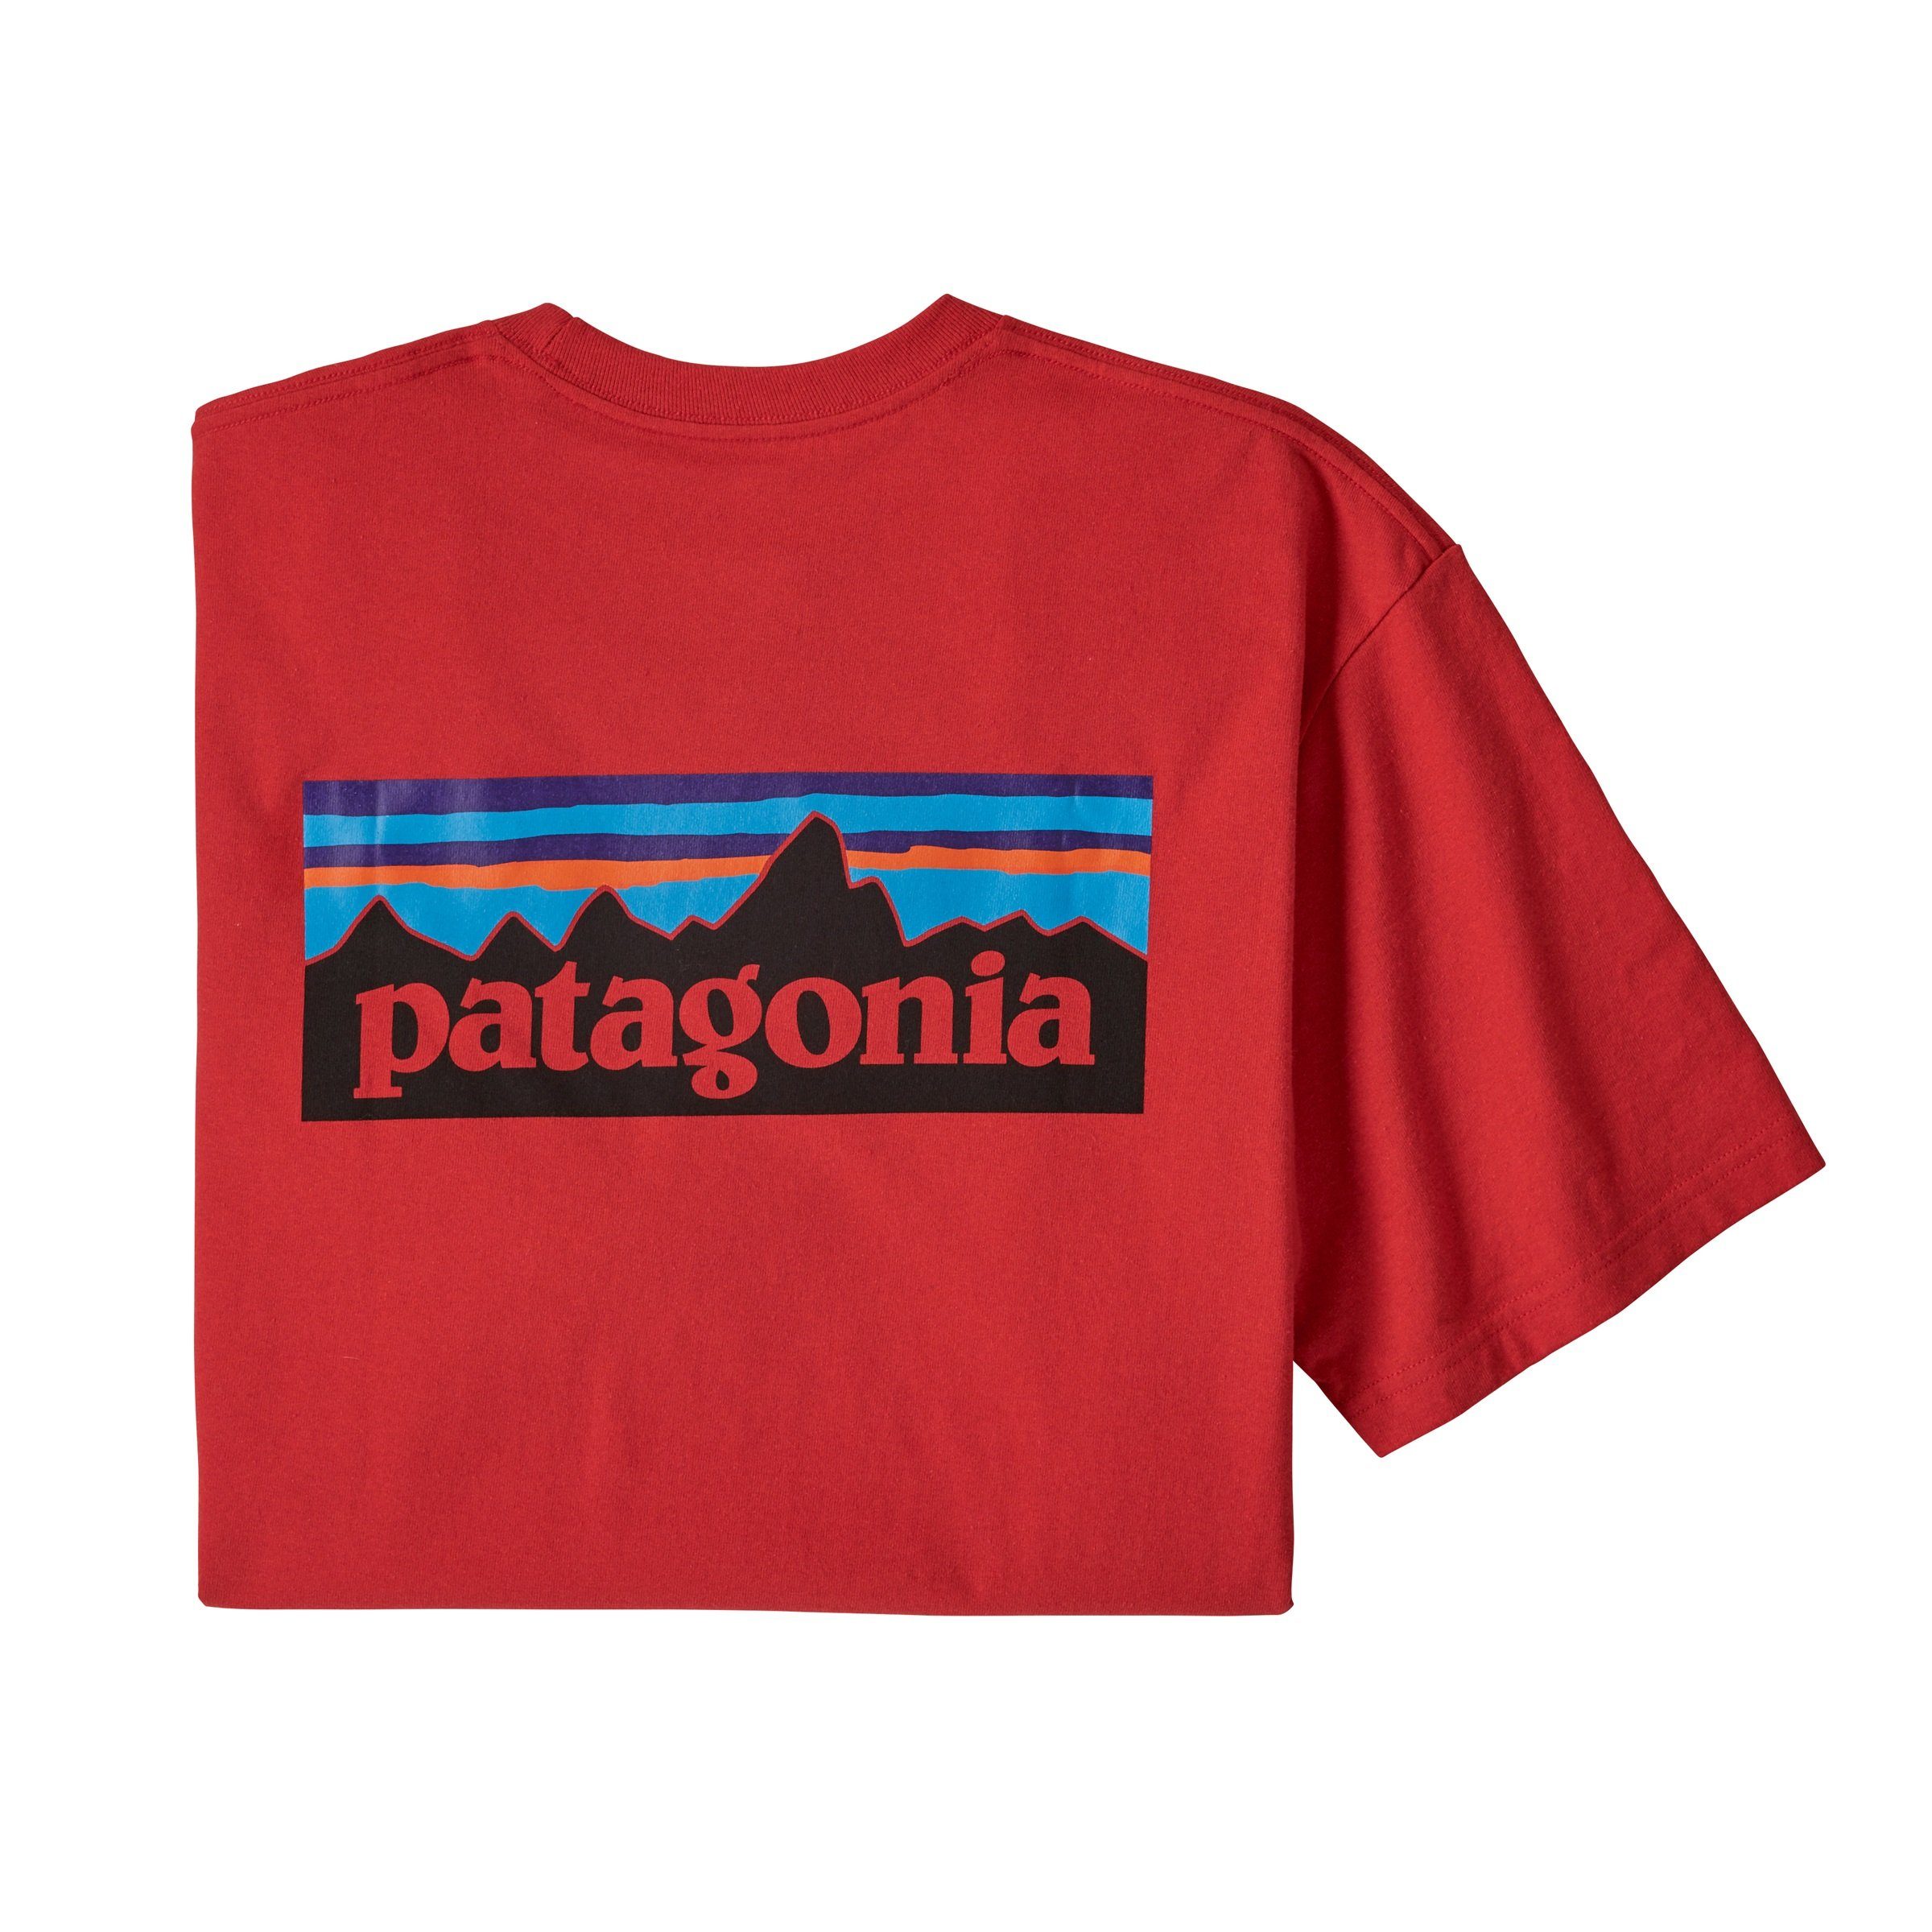 Patagonia Patagonia white Adult Herren Responsibili-Tee T-Shirt T-Shirt P-6 Logo